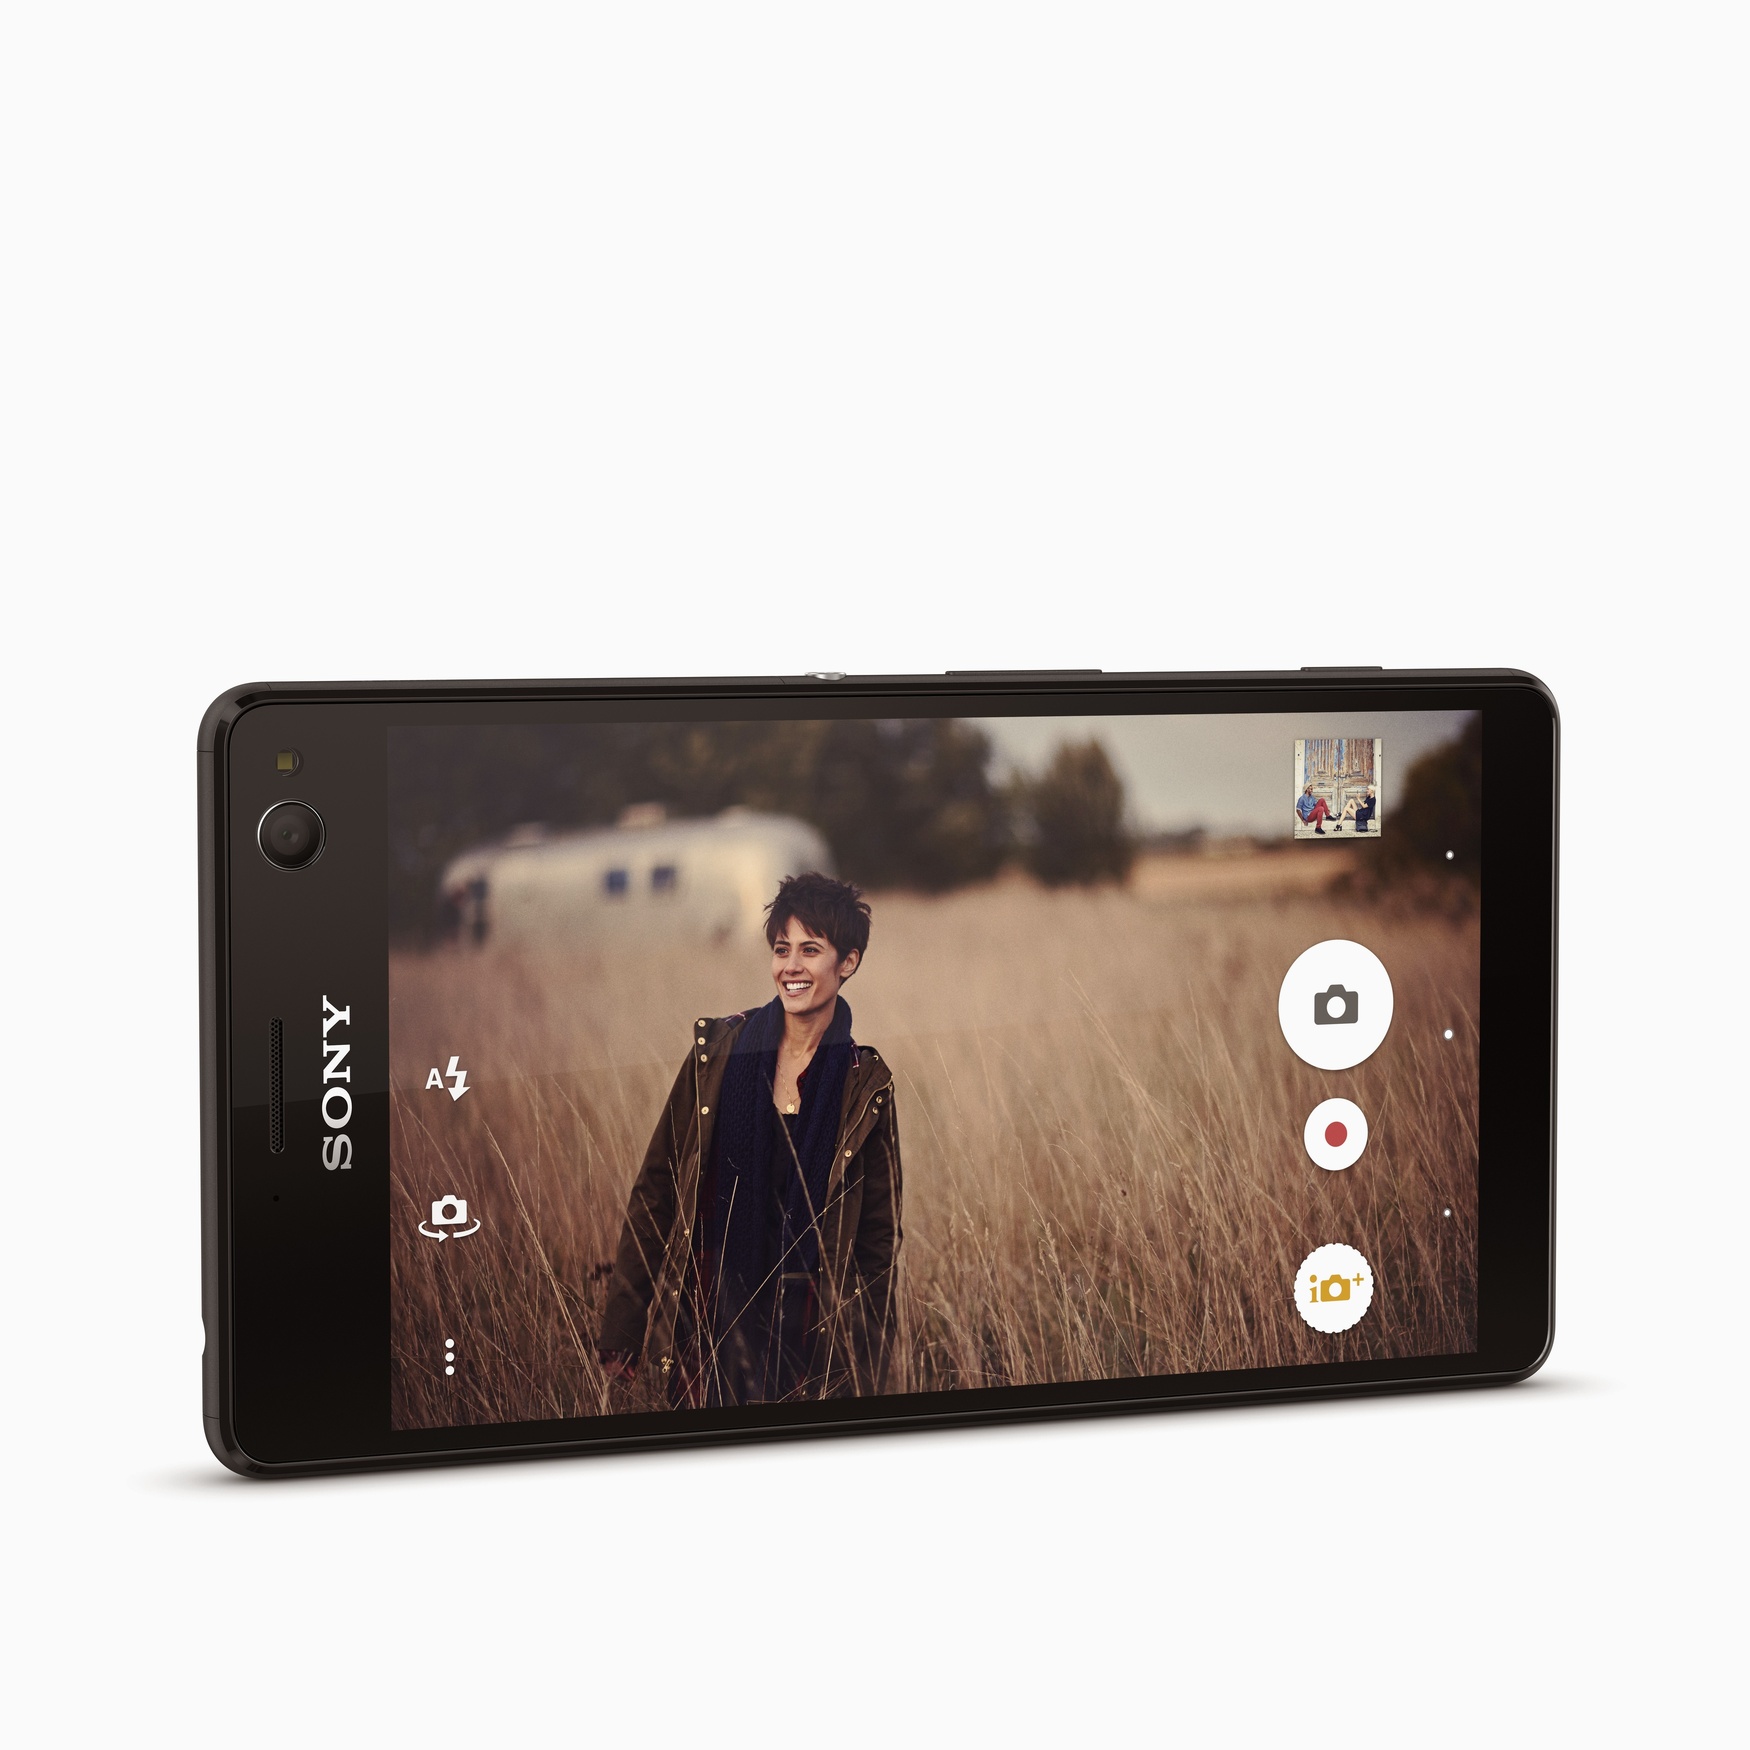 Sony Xperia C4 um explosivo selfie-phone